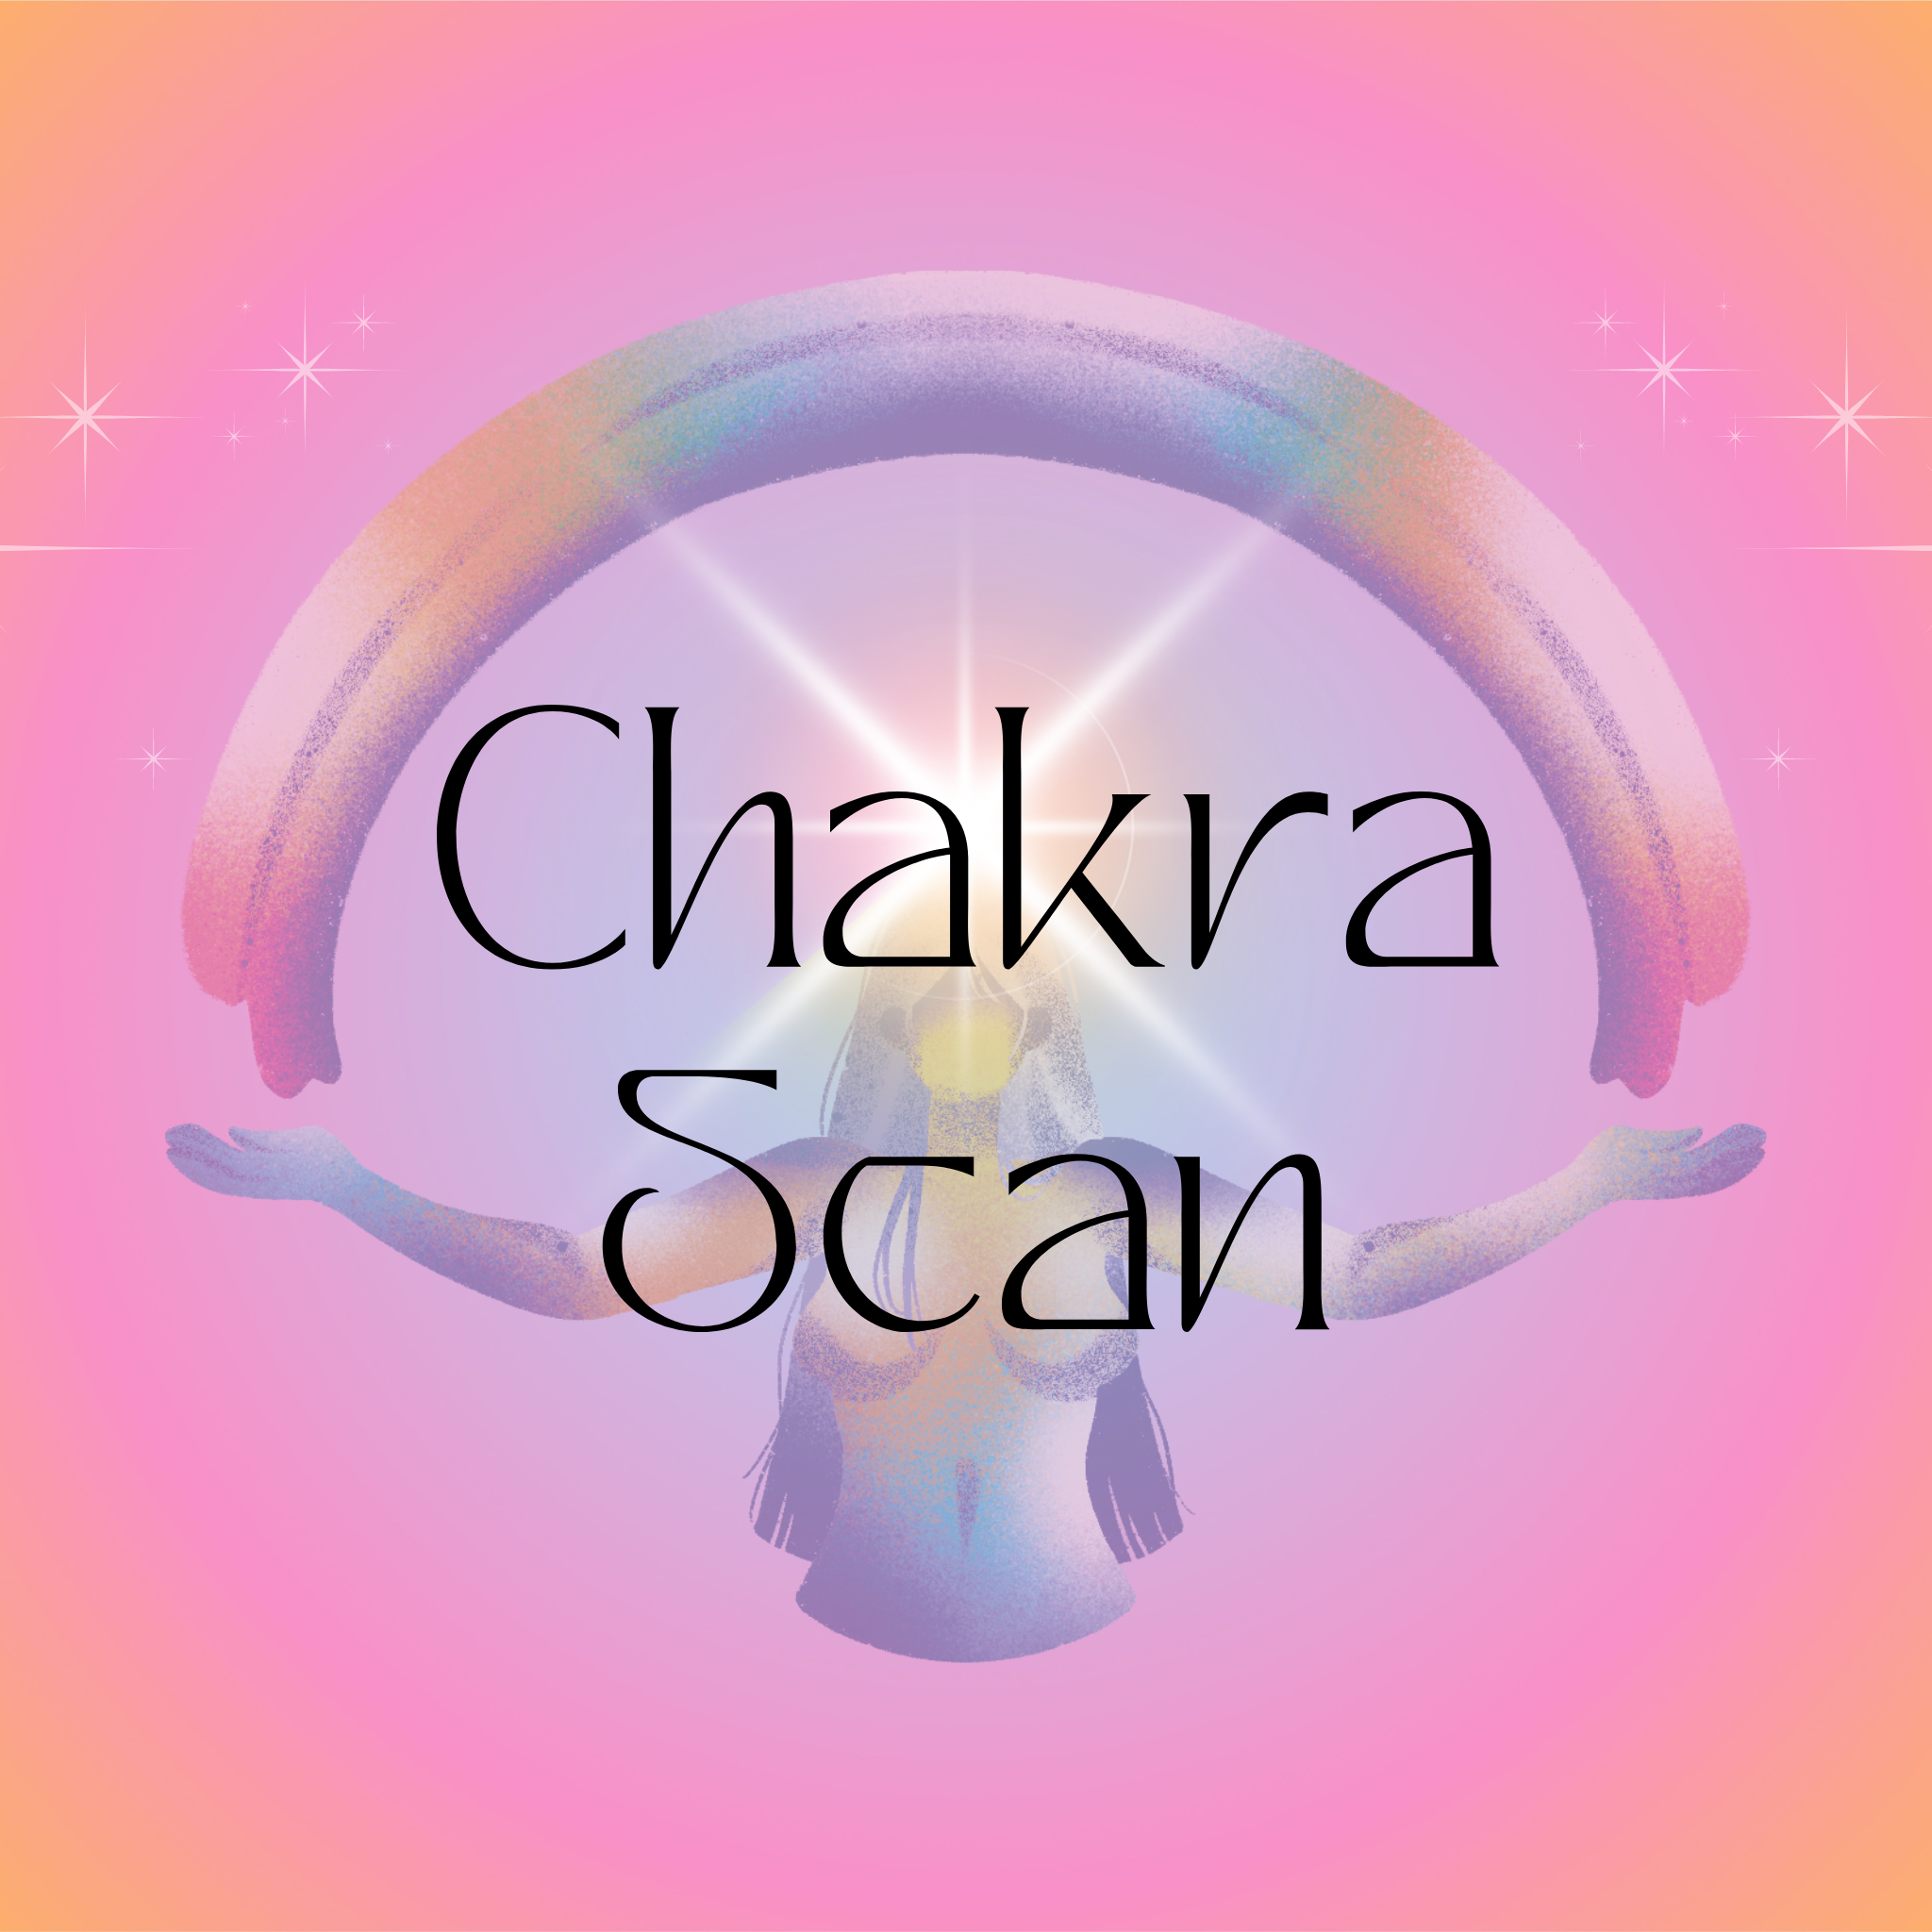 Chakra Scan